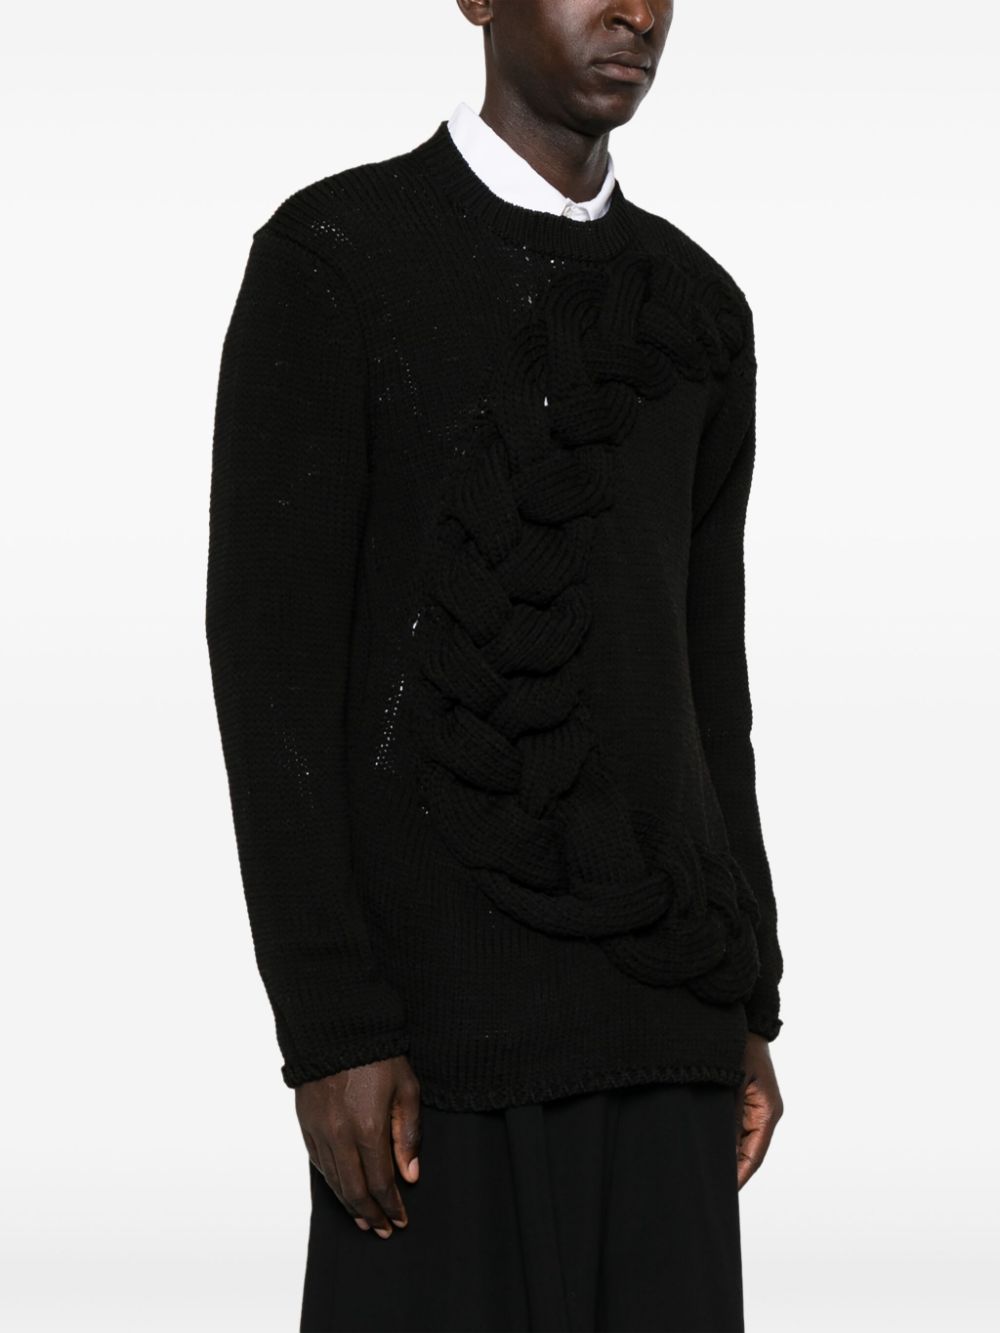 メンズ用ブラックチャンキーケーブル編みクルーネックセーター